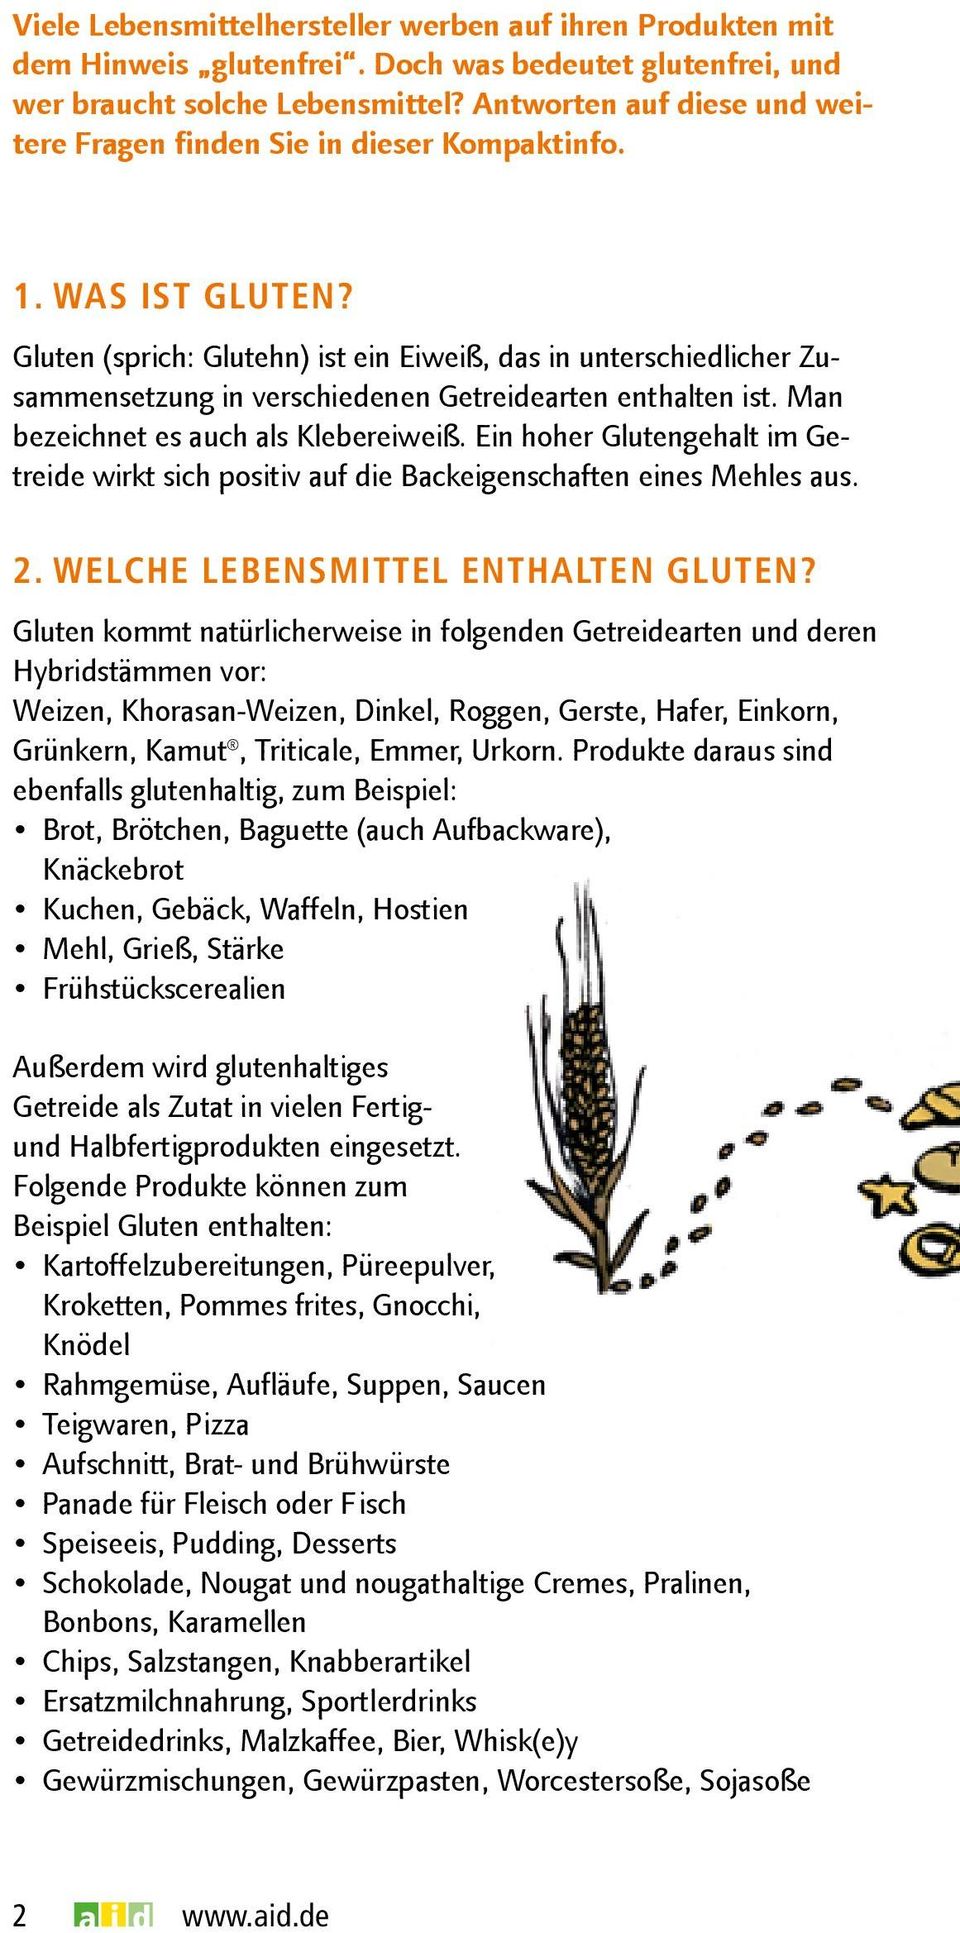 Gluten (sprich: Glutehn) ist ein Eiweiß, das in unterschiedlicher Zusammensetzung in verschiedenen Getreidearten enthalten ist. Man bezeichnet es auch als Klebereiweiß.